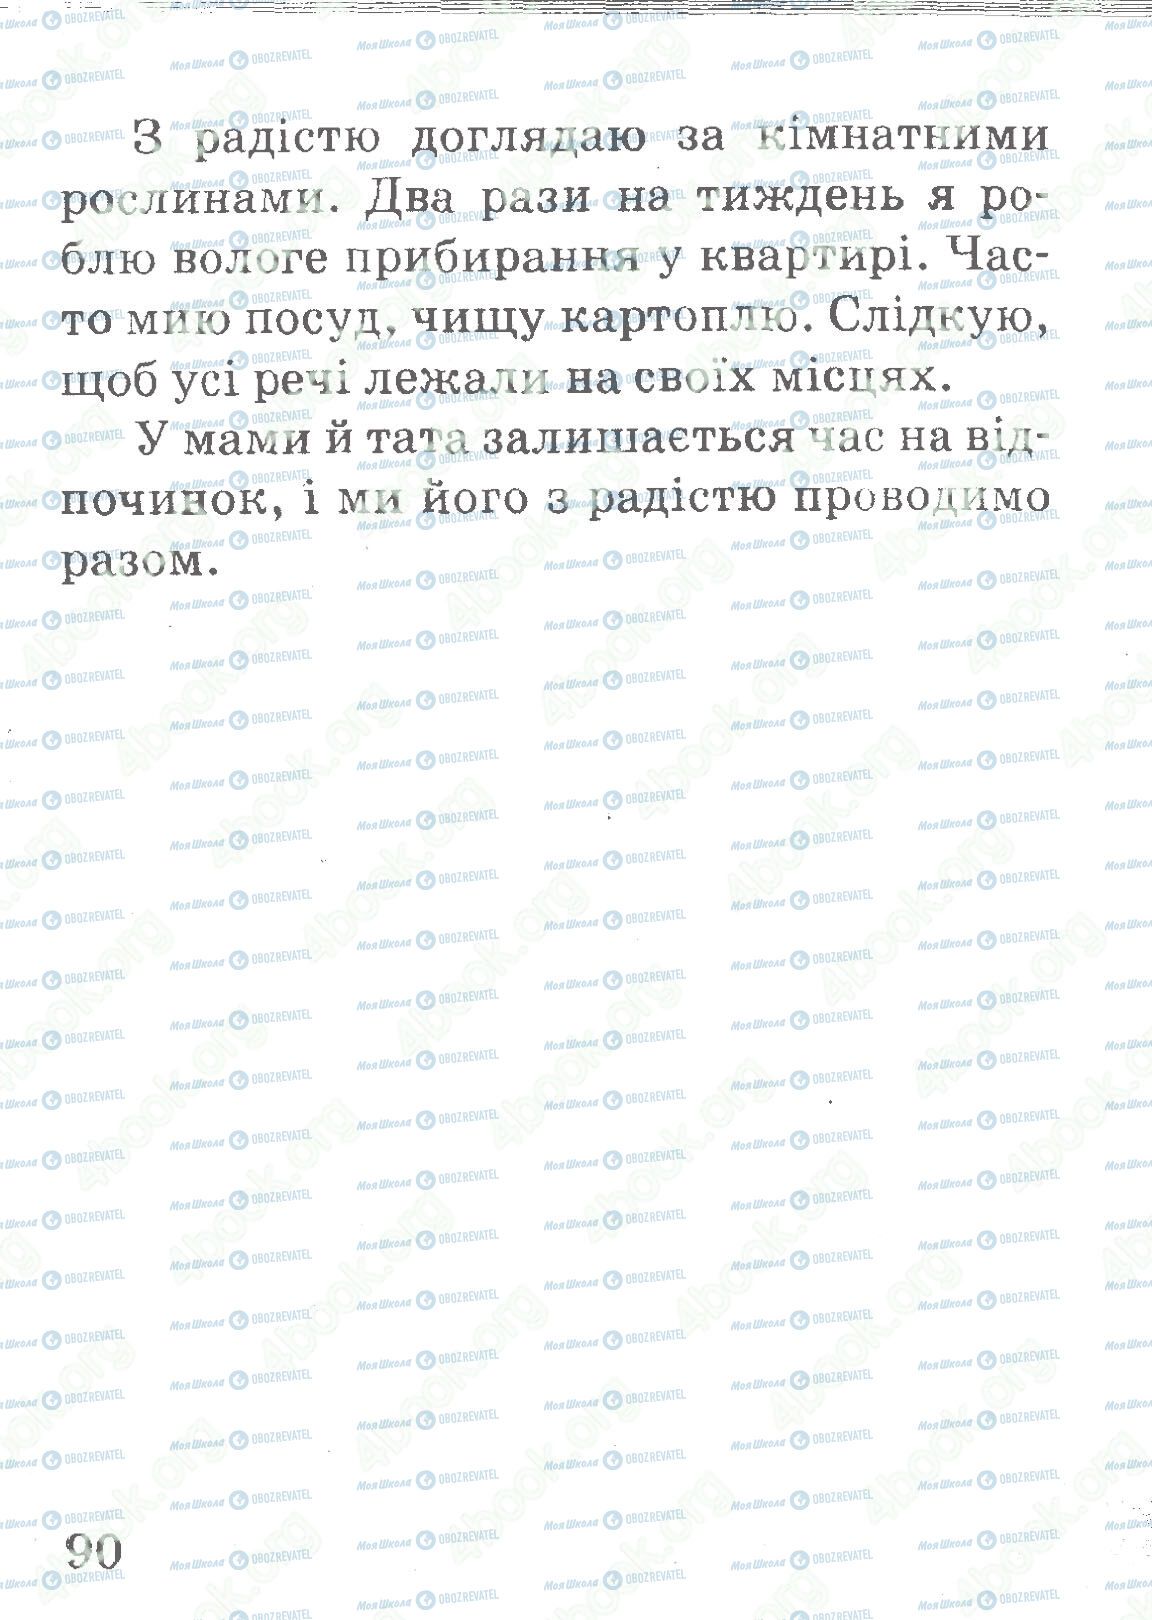 ДПА Укр мова 4 класс страница 90